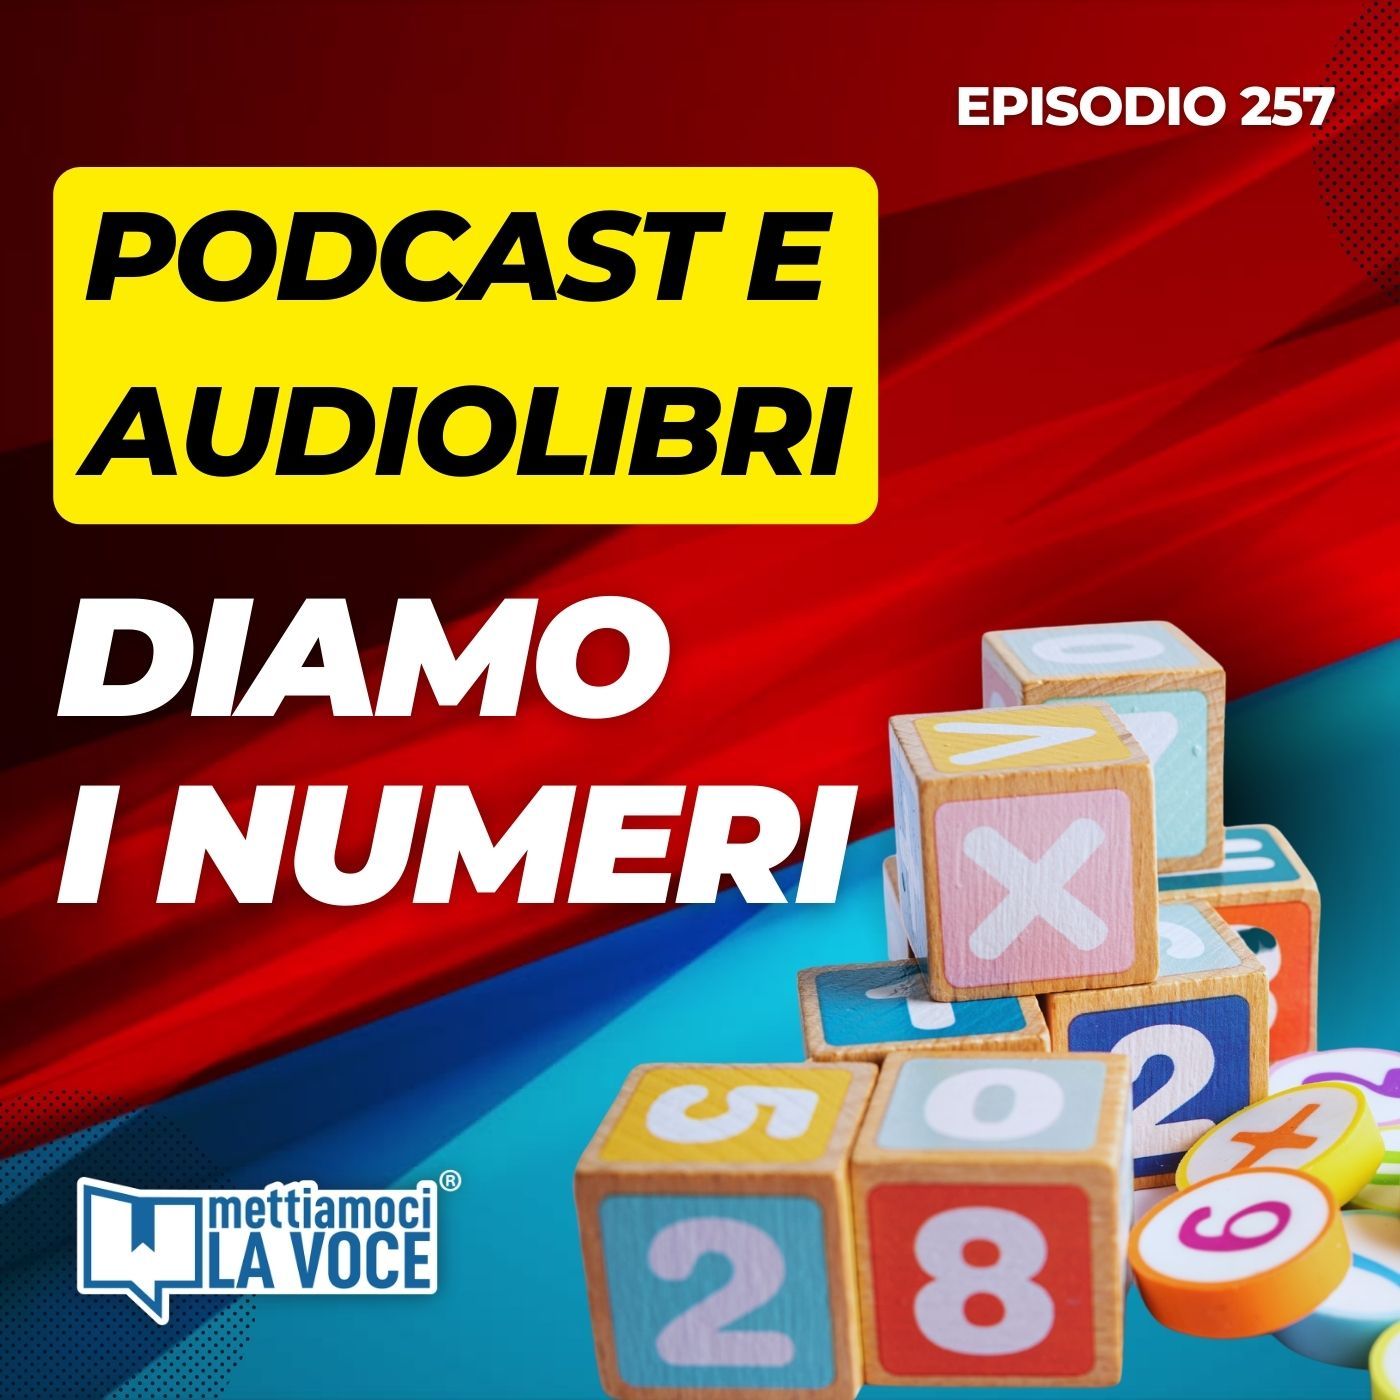 Podcast e audiolibri, diamo i numeri